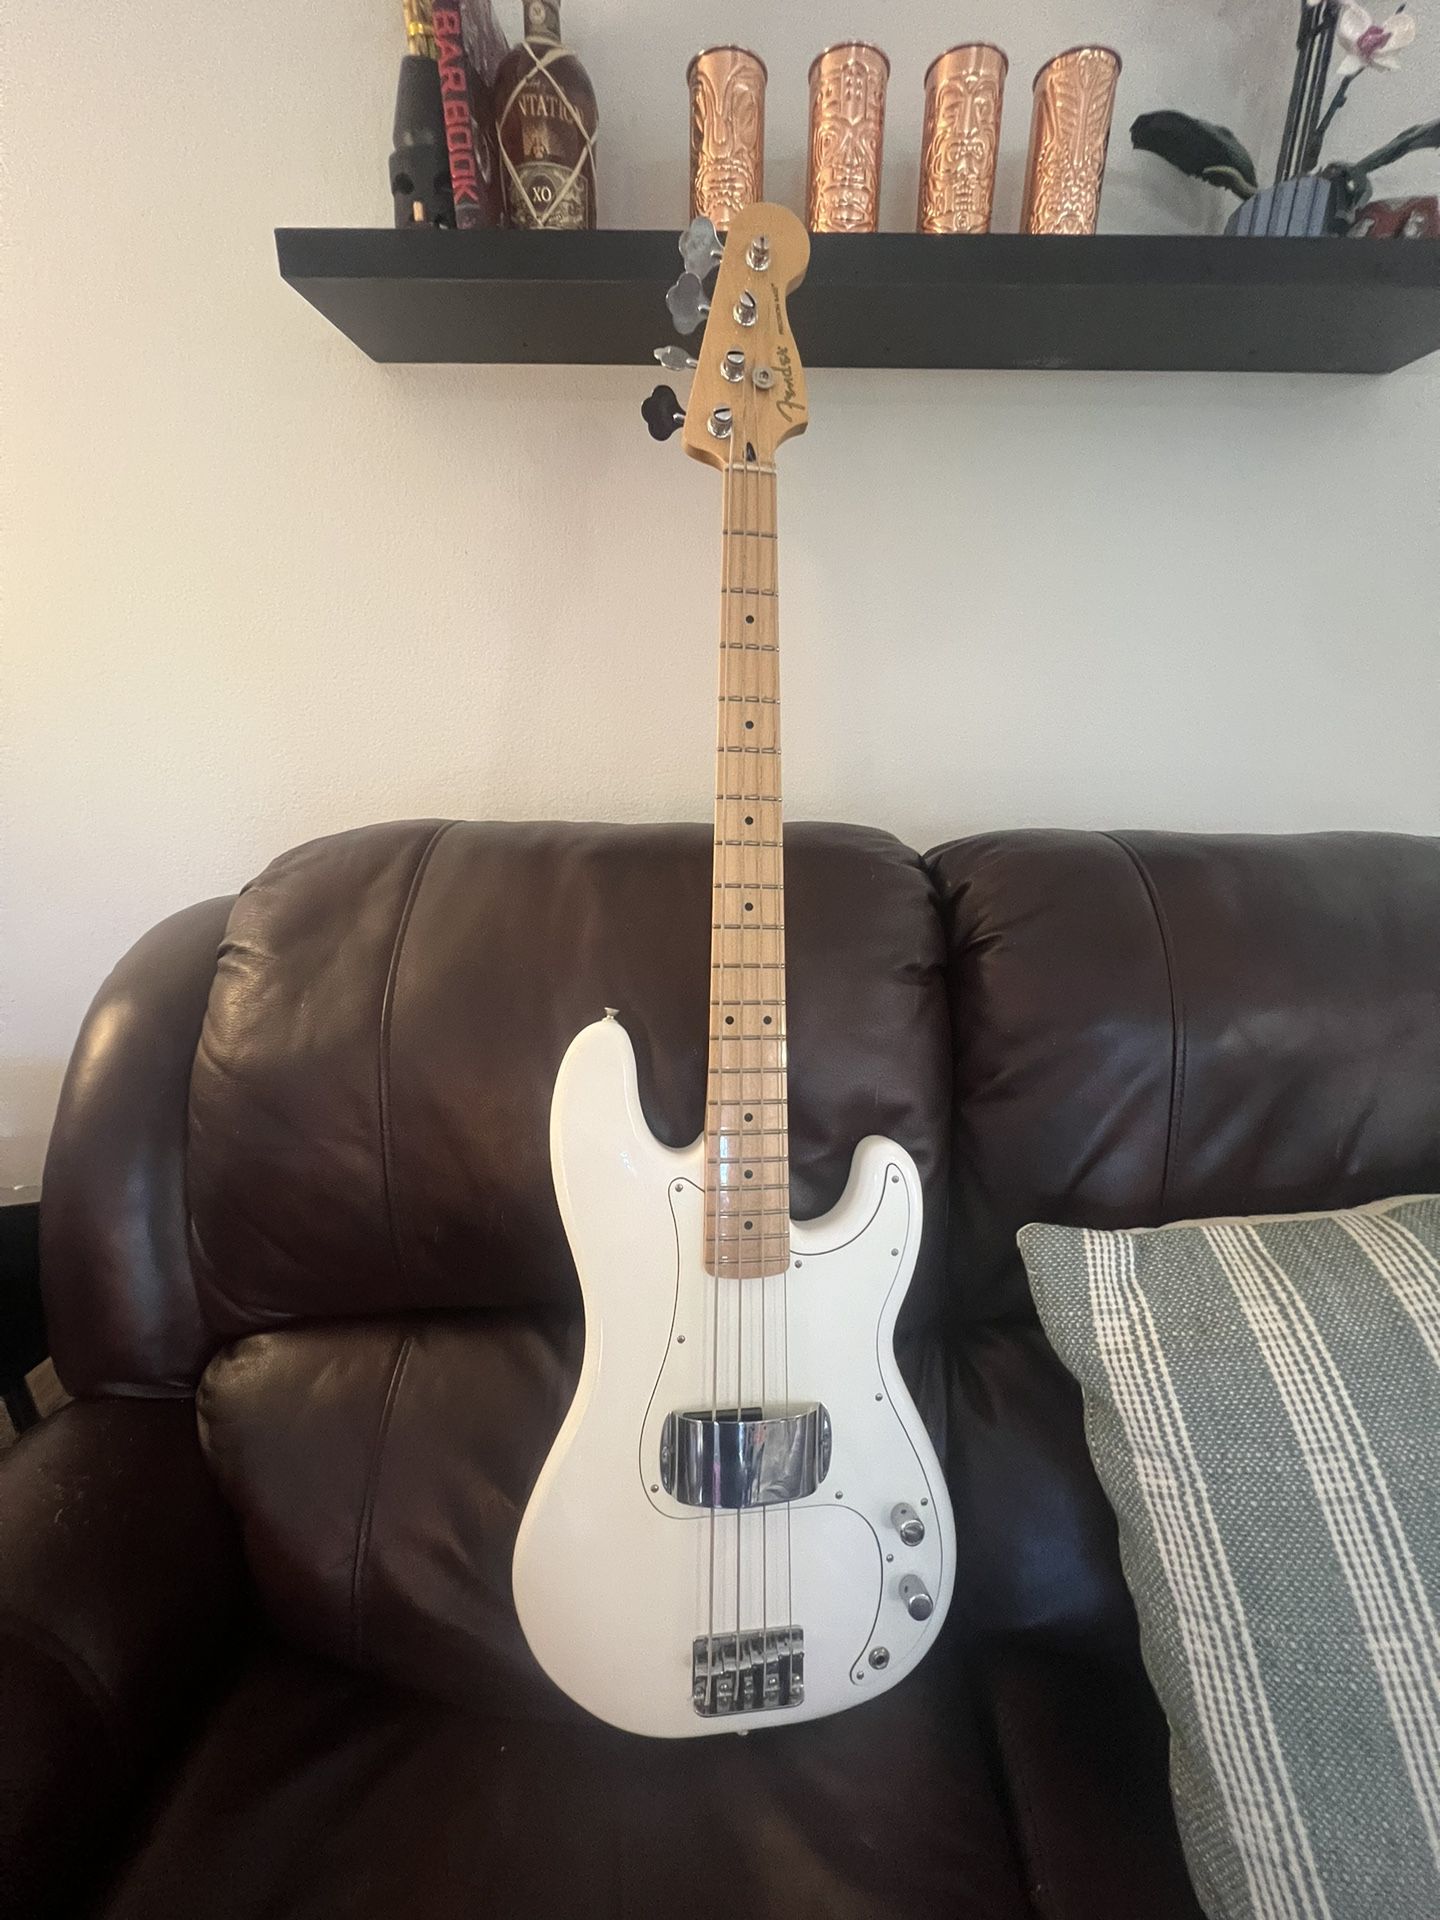 Fender P Bass